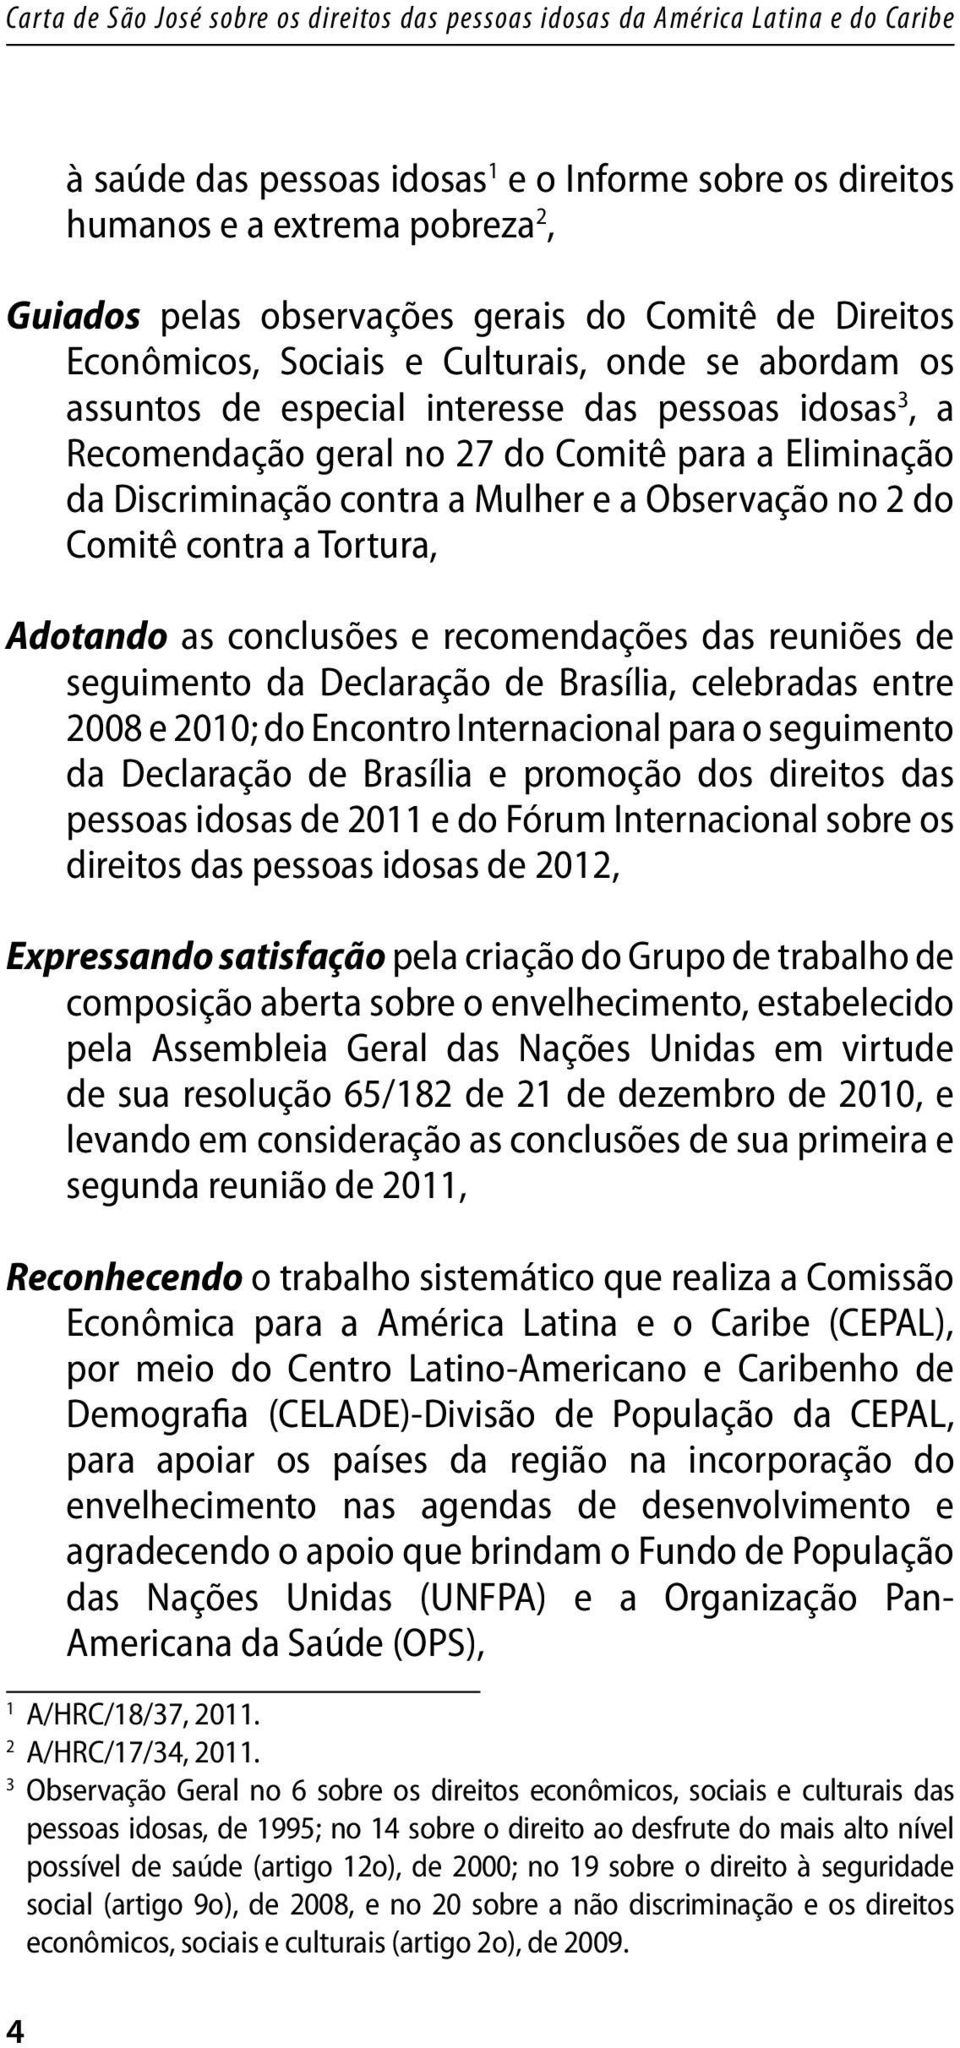 as conclusões e recomendações das reuniões de seguimento da Declaração de Brasília, celebradas entre 2008 e 2010; do Encontro Internacional para o seguimento da Declaração de Brasília e promoção dos